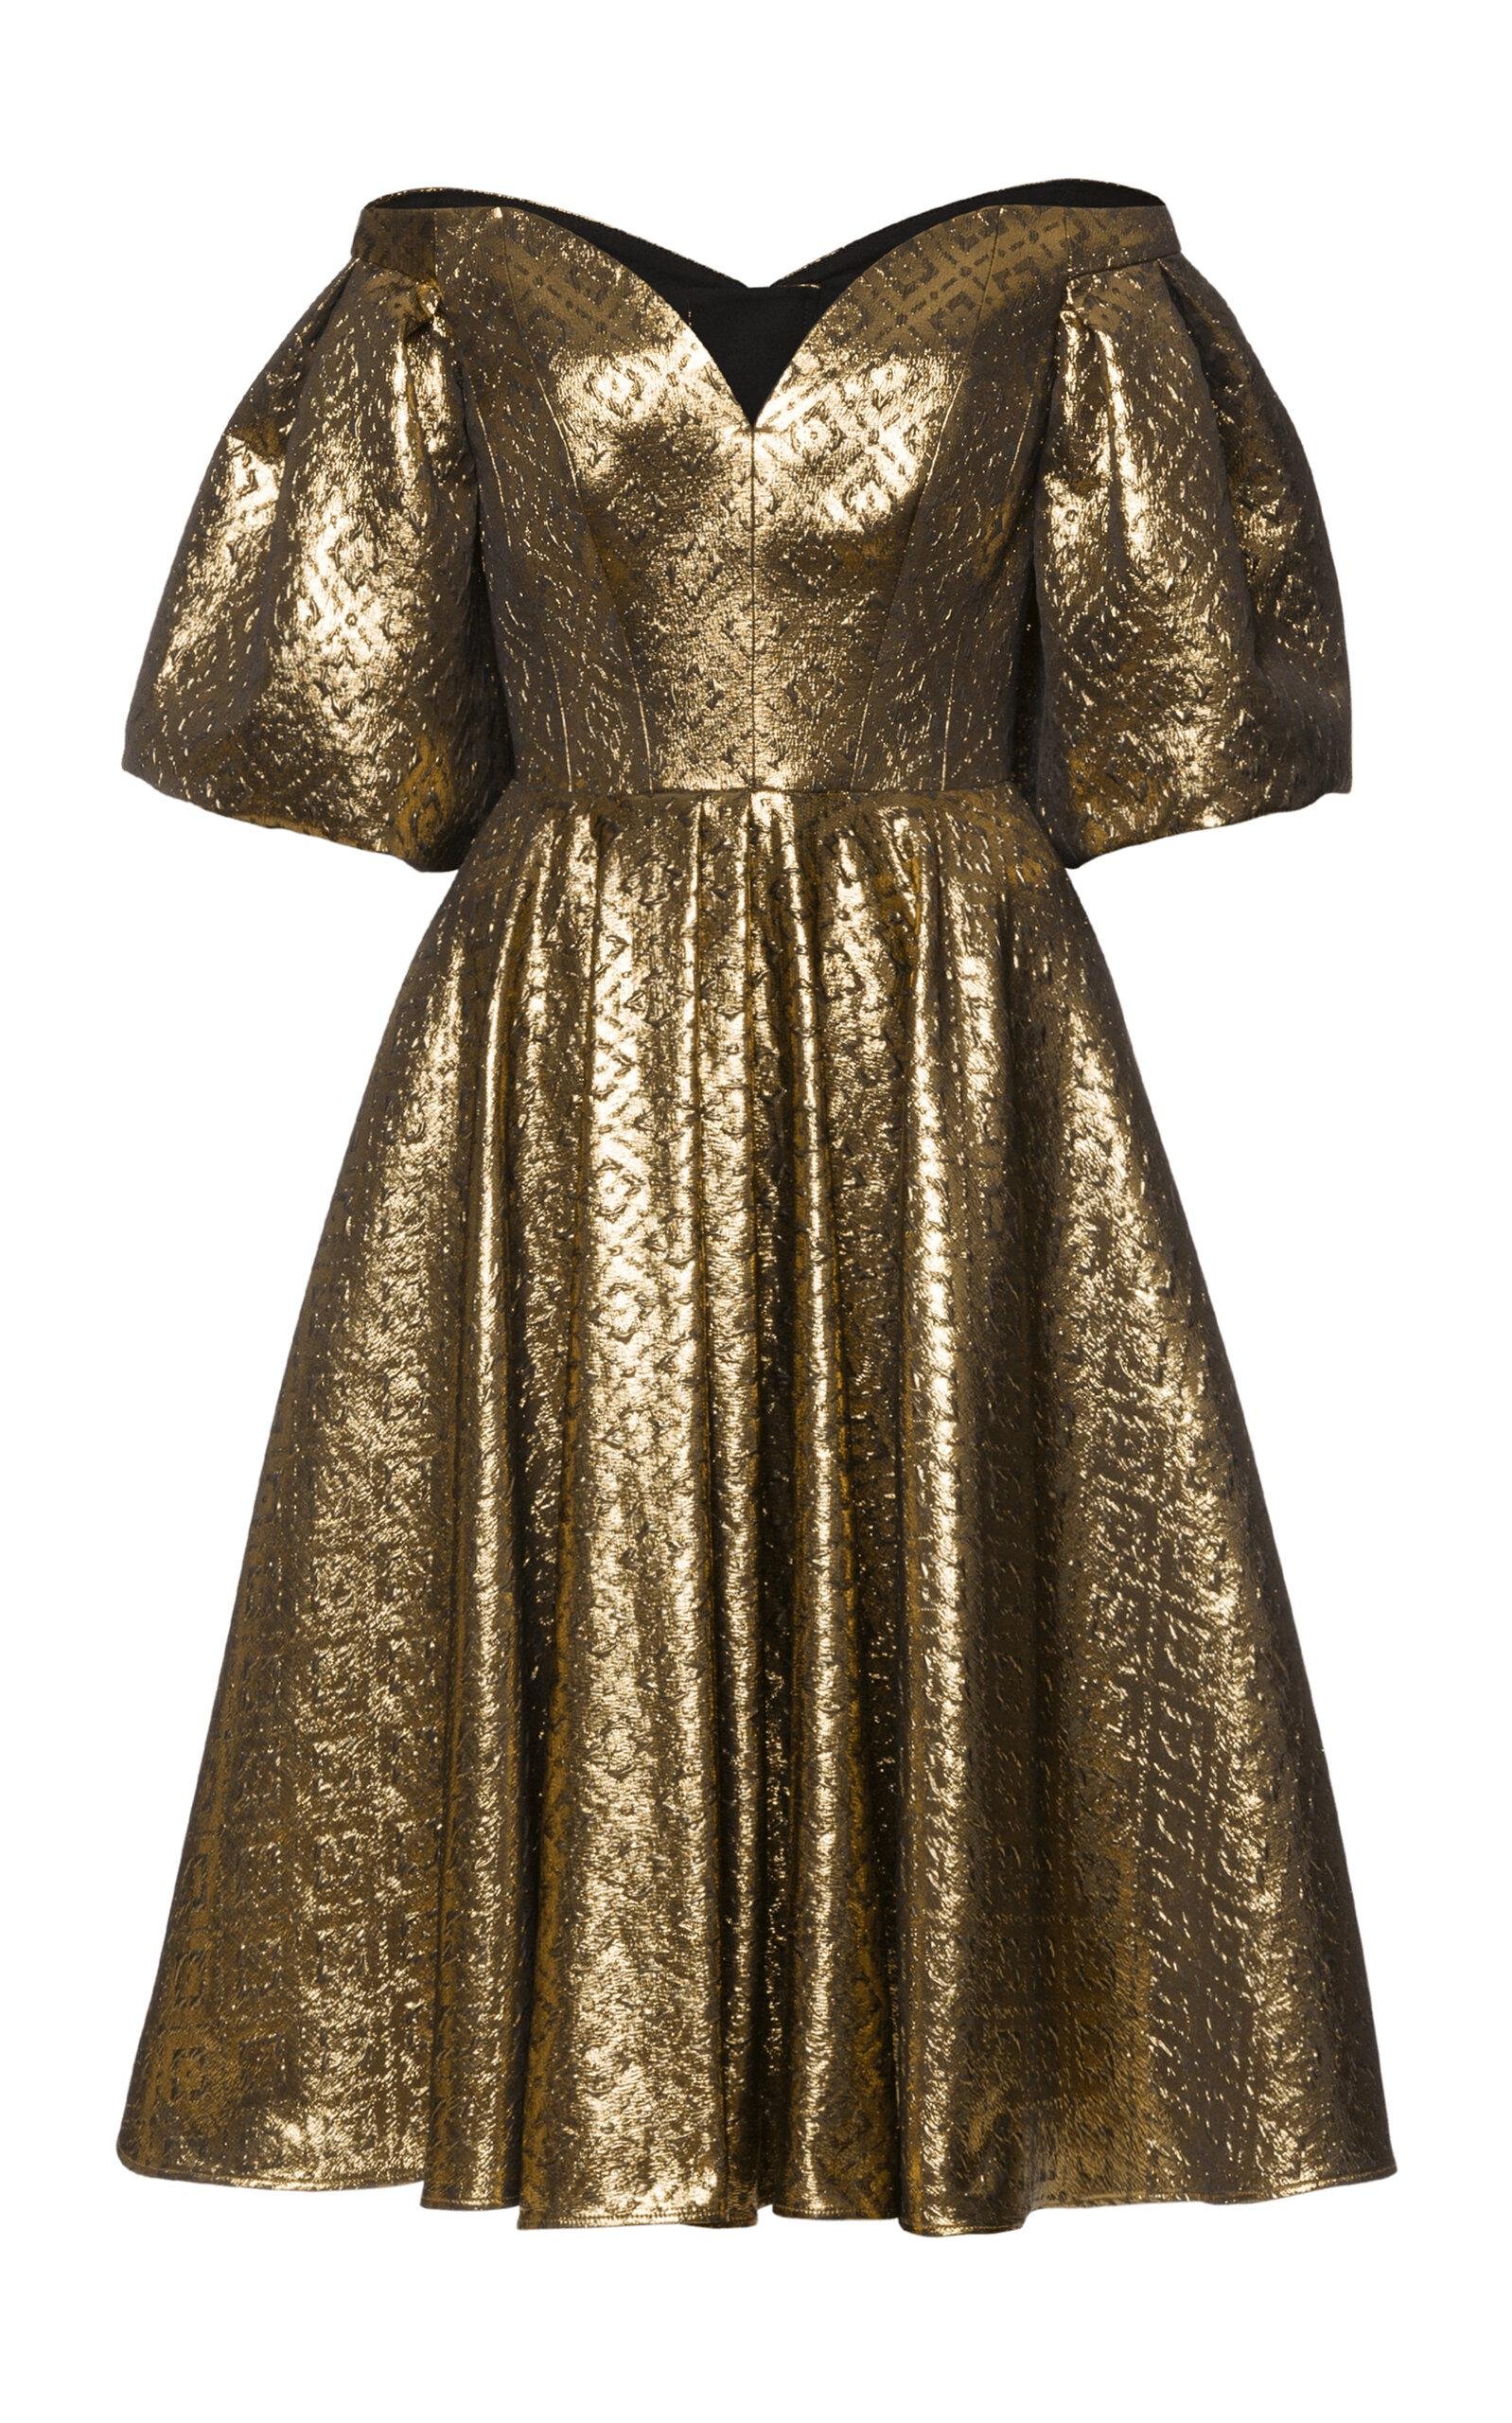 Lena Hoschek - Treasure A-Line Mini Dress - Gold - XL - Only At Moda Operandi by LENA HOSCHEK